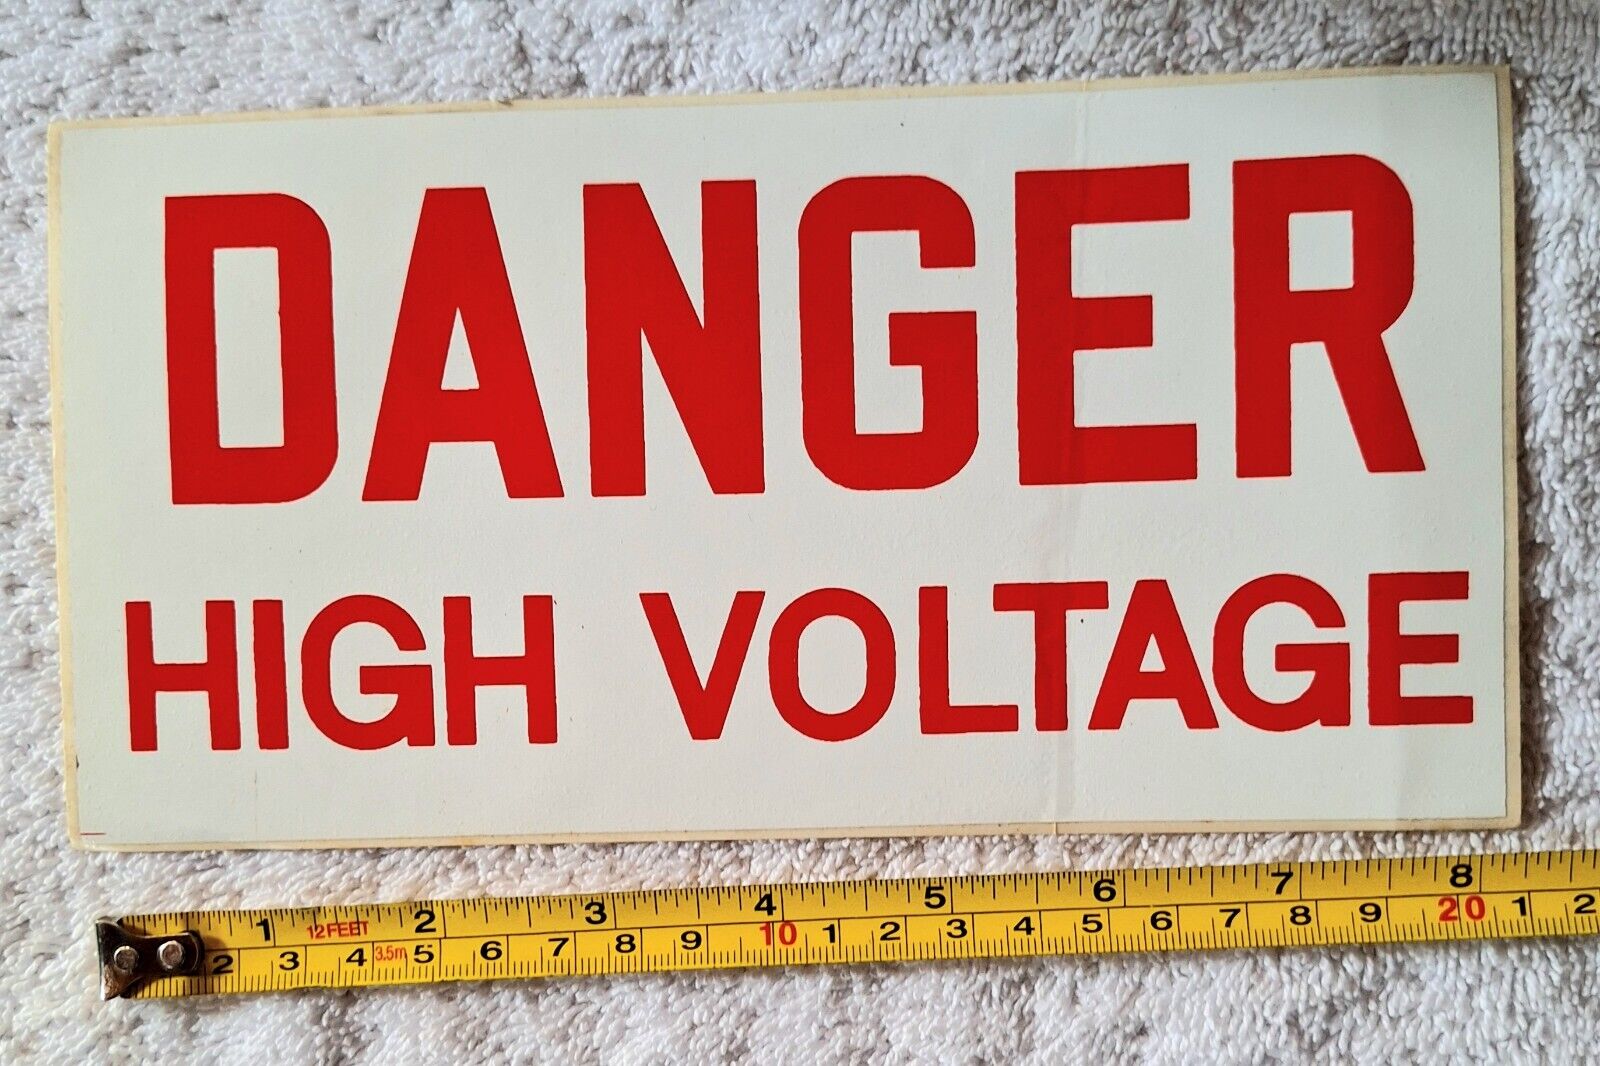 Danger High Voltage Sticker